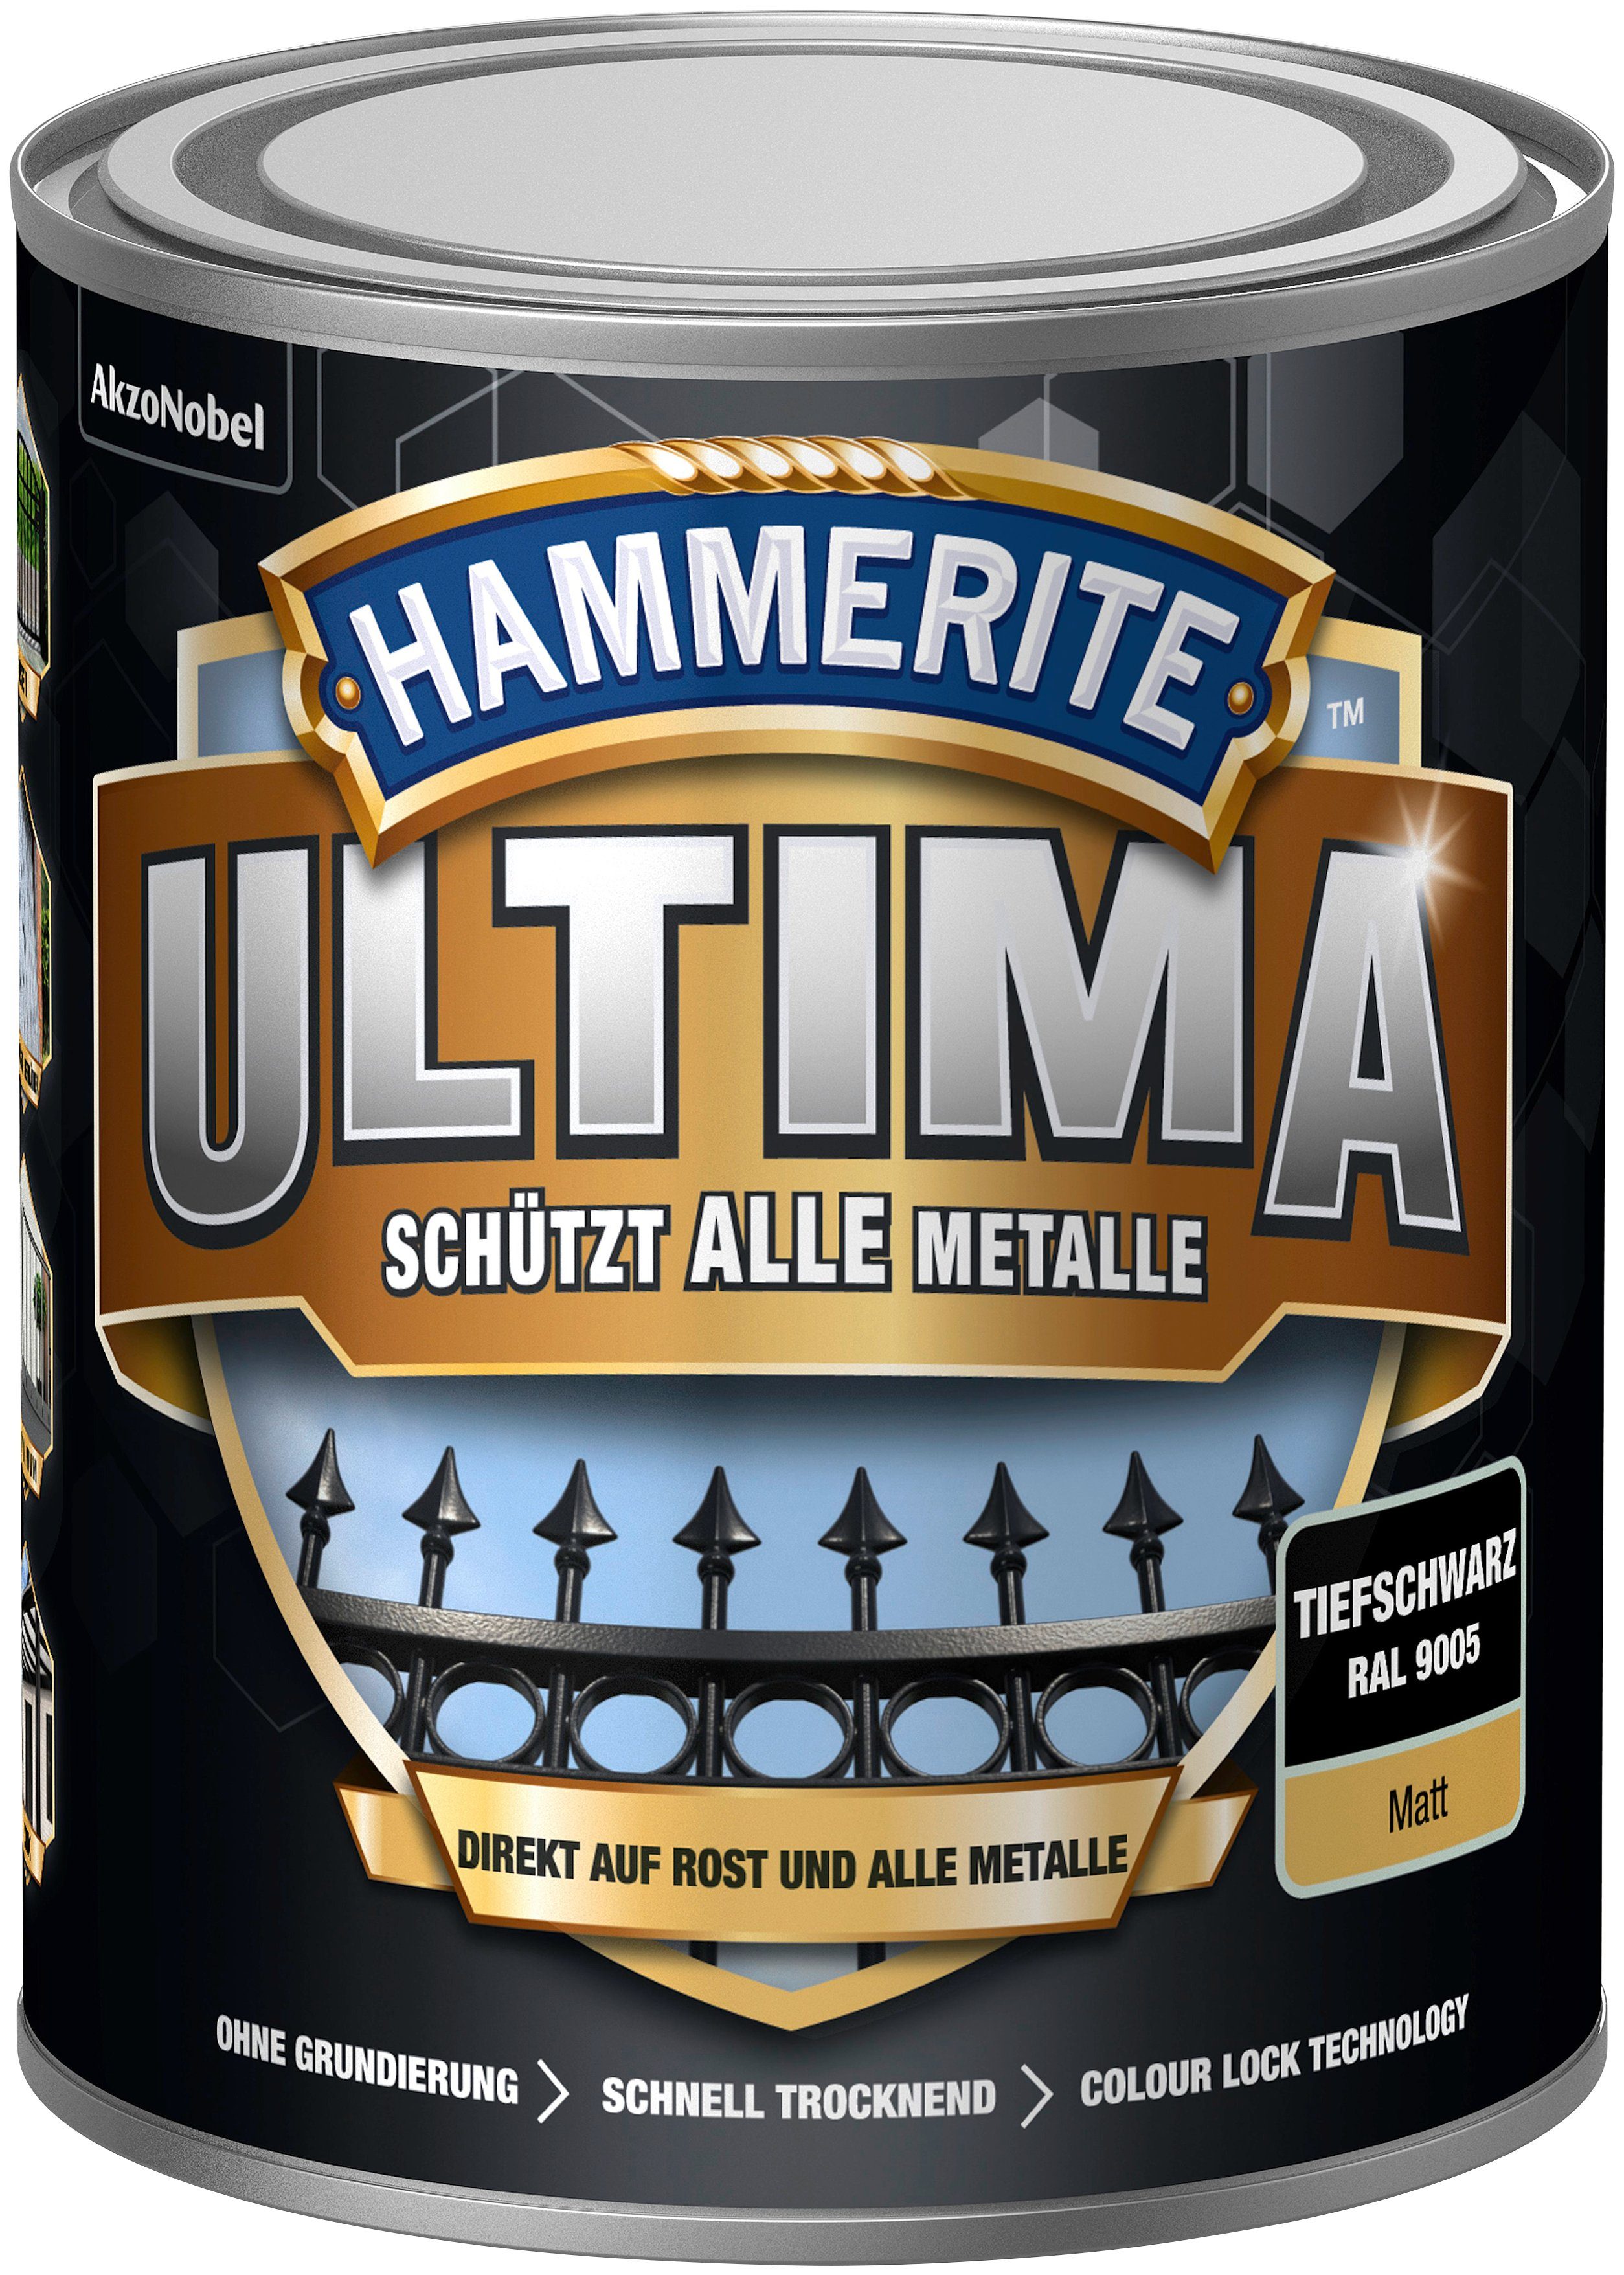 Hammerite  Metallschutzlack ULTIMA schützt alle Metalle, 3in1, tiefschwarz RAL 9005, matt